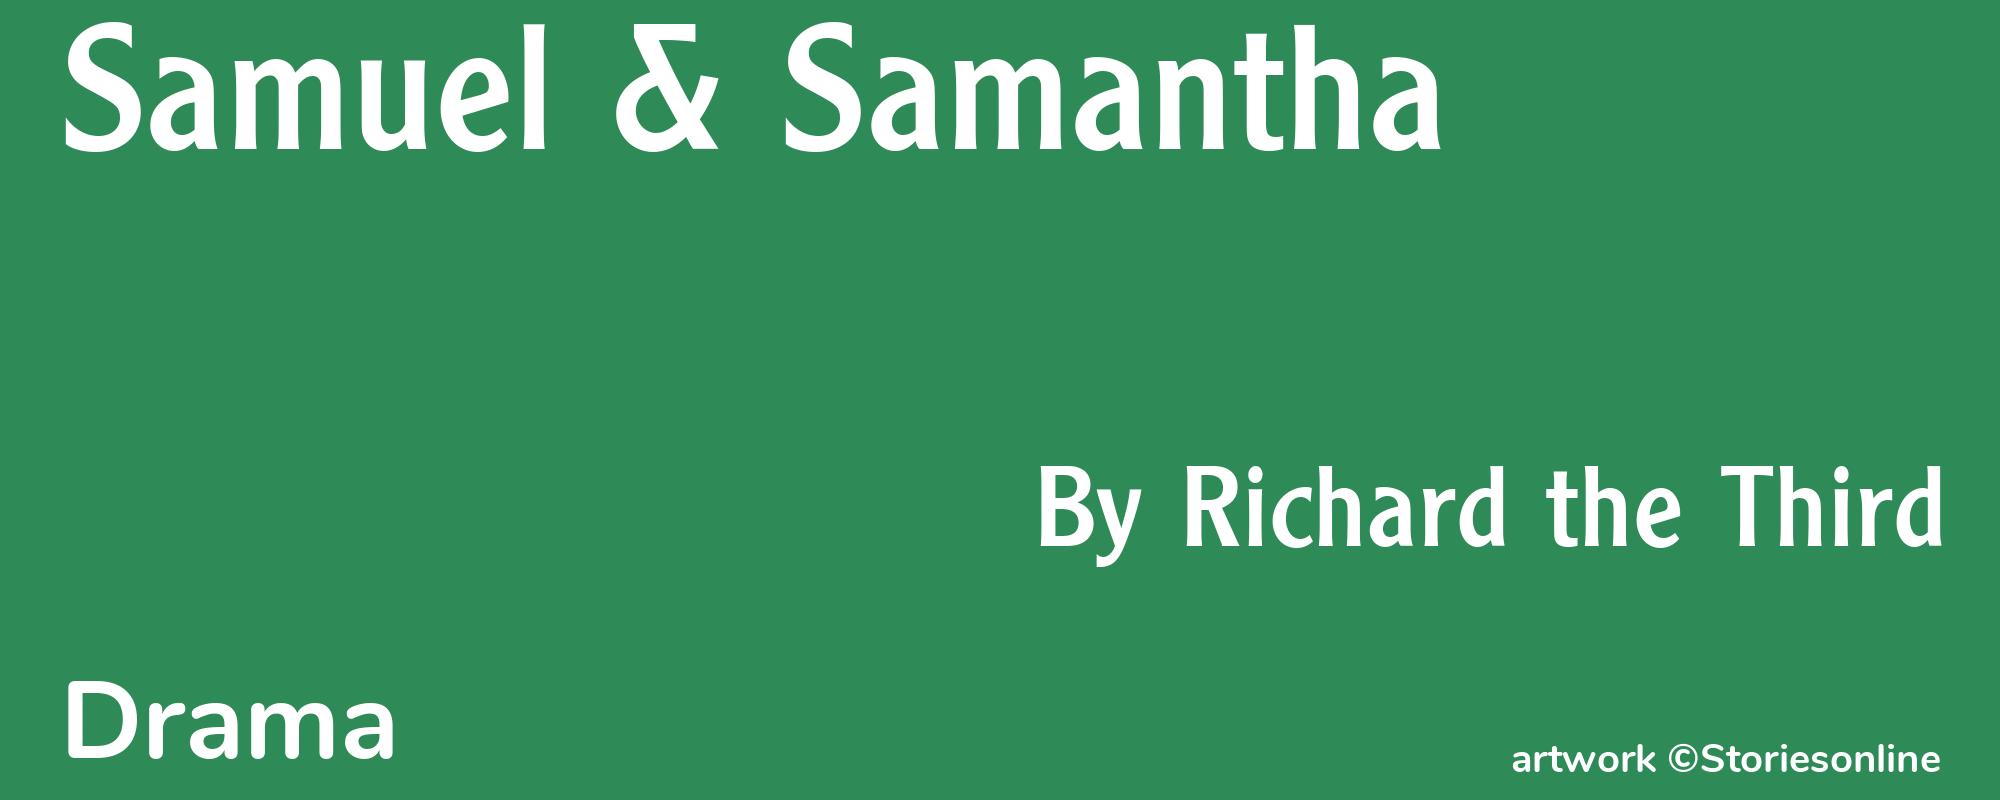 Samuel & Samantha - Cover